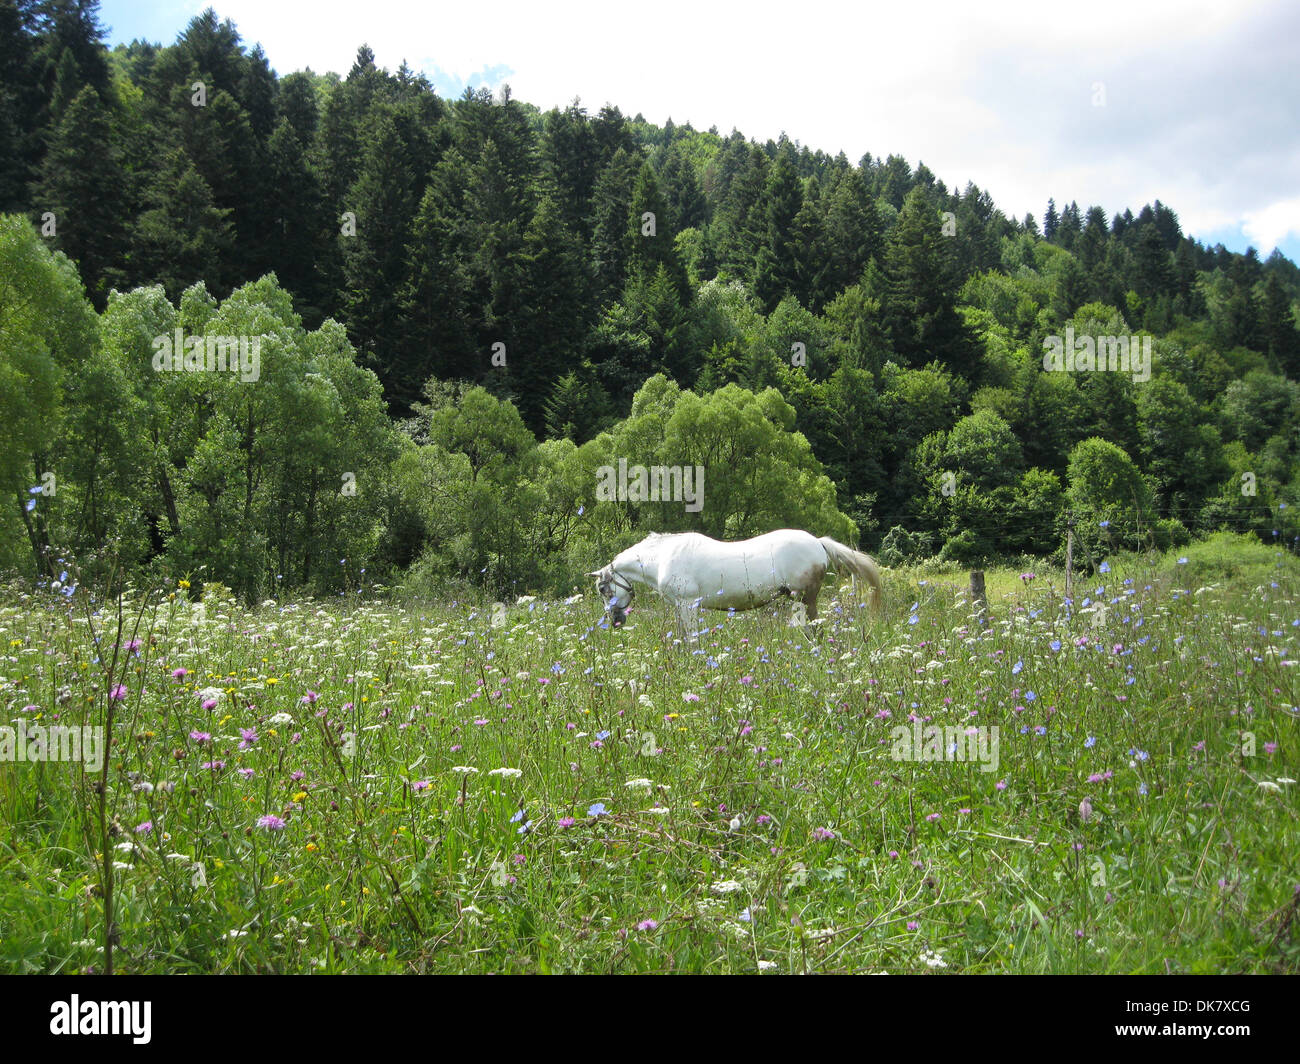 Paesaggio rurale con campo di fiori e cavallo al pascolo Foto Stock